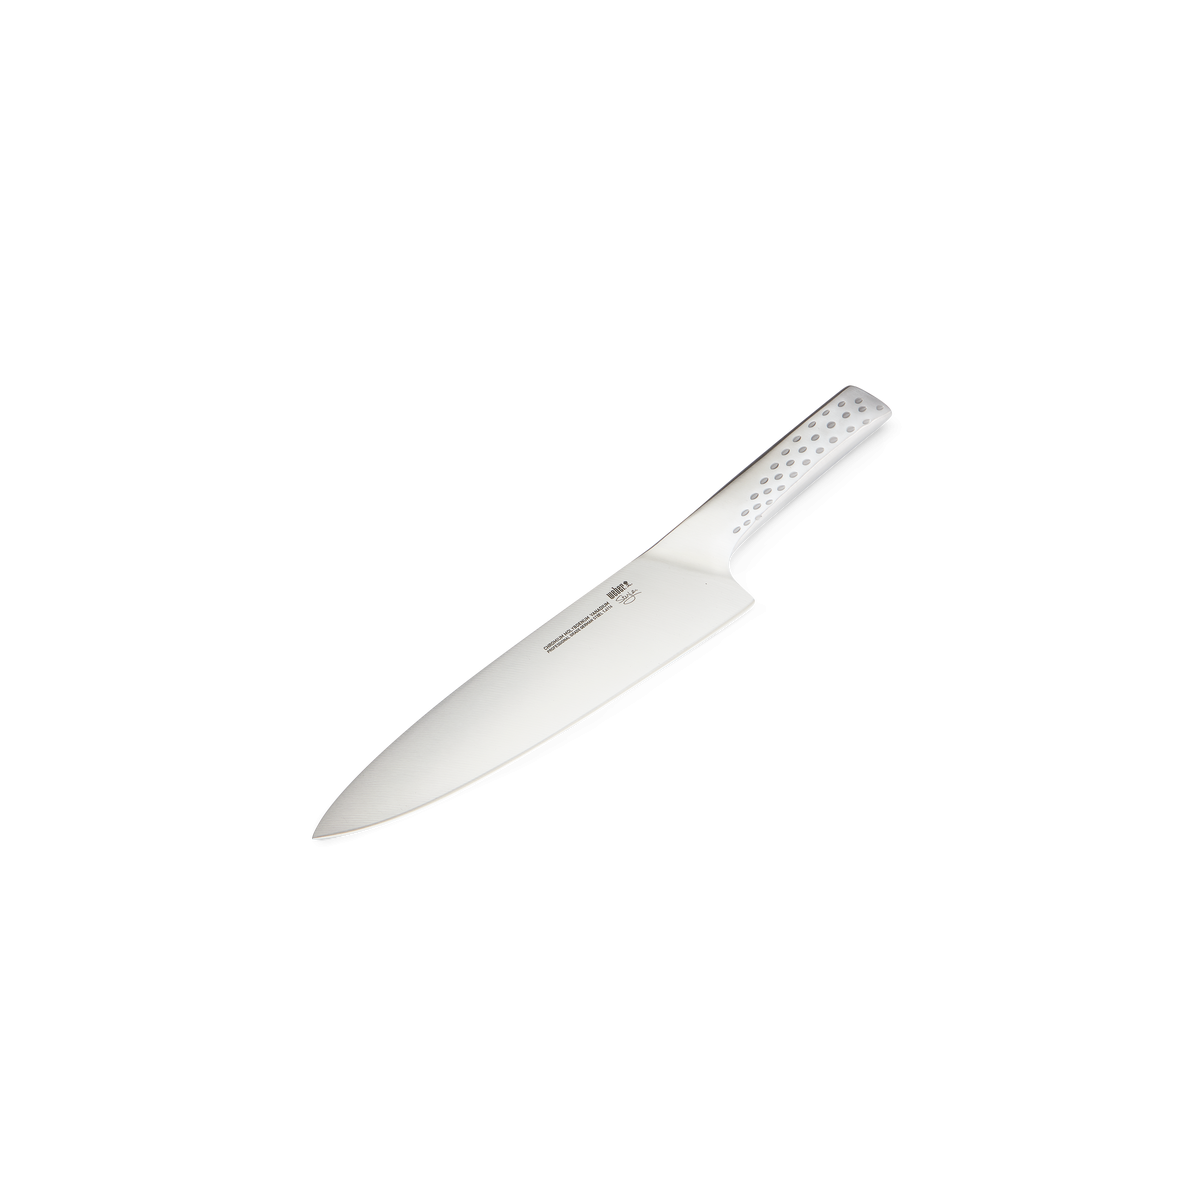 WEBER DELUXE CHEFS KNIFE - STAINLESS STEEL 36cm, 17070